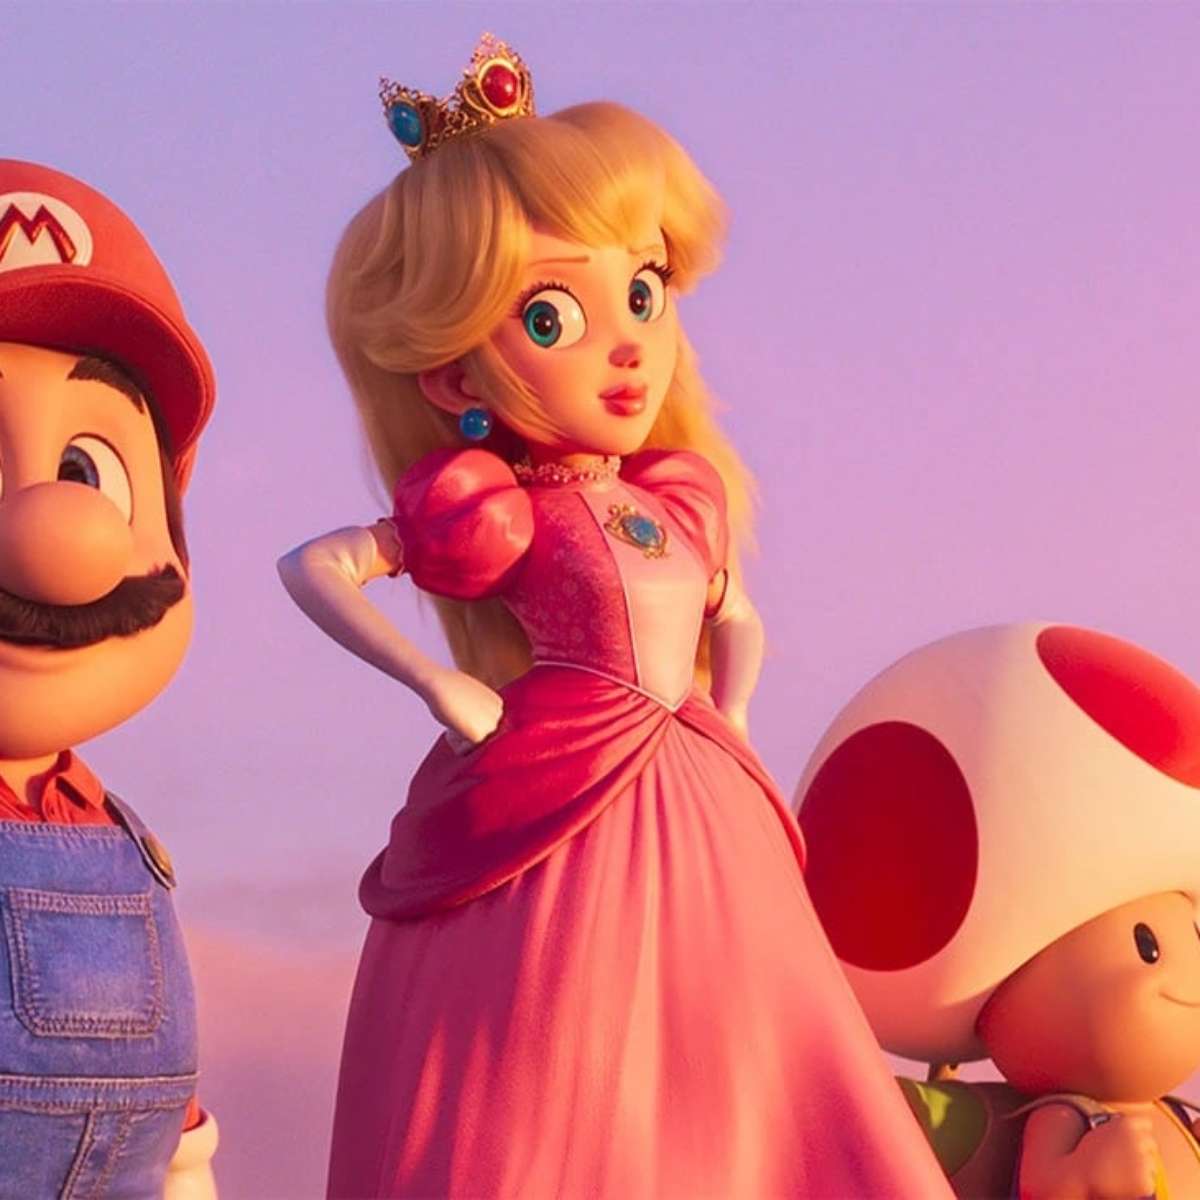 Super Mario Bros. - O Filme acerta em cheio os fãs do encanador